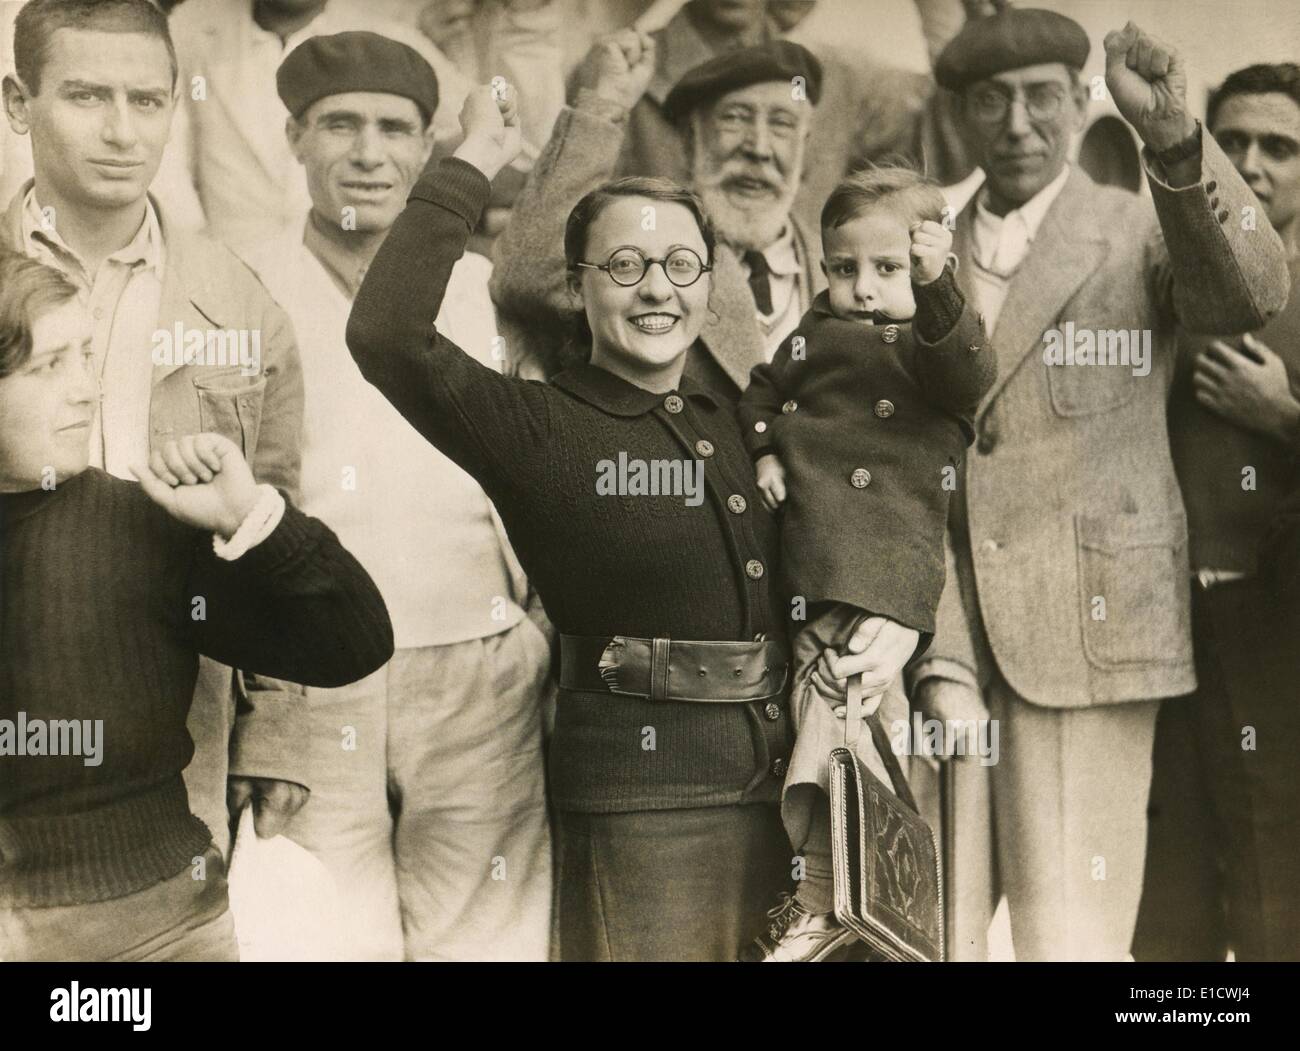 Besiegten spanischen Republikaner Flüchtlinge geben ihre geballte Faust Salut in Bordeaux, Frankreich. Spanischer Bürgerkrieg. 1939. Stockfoto